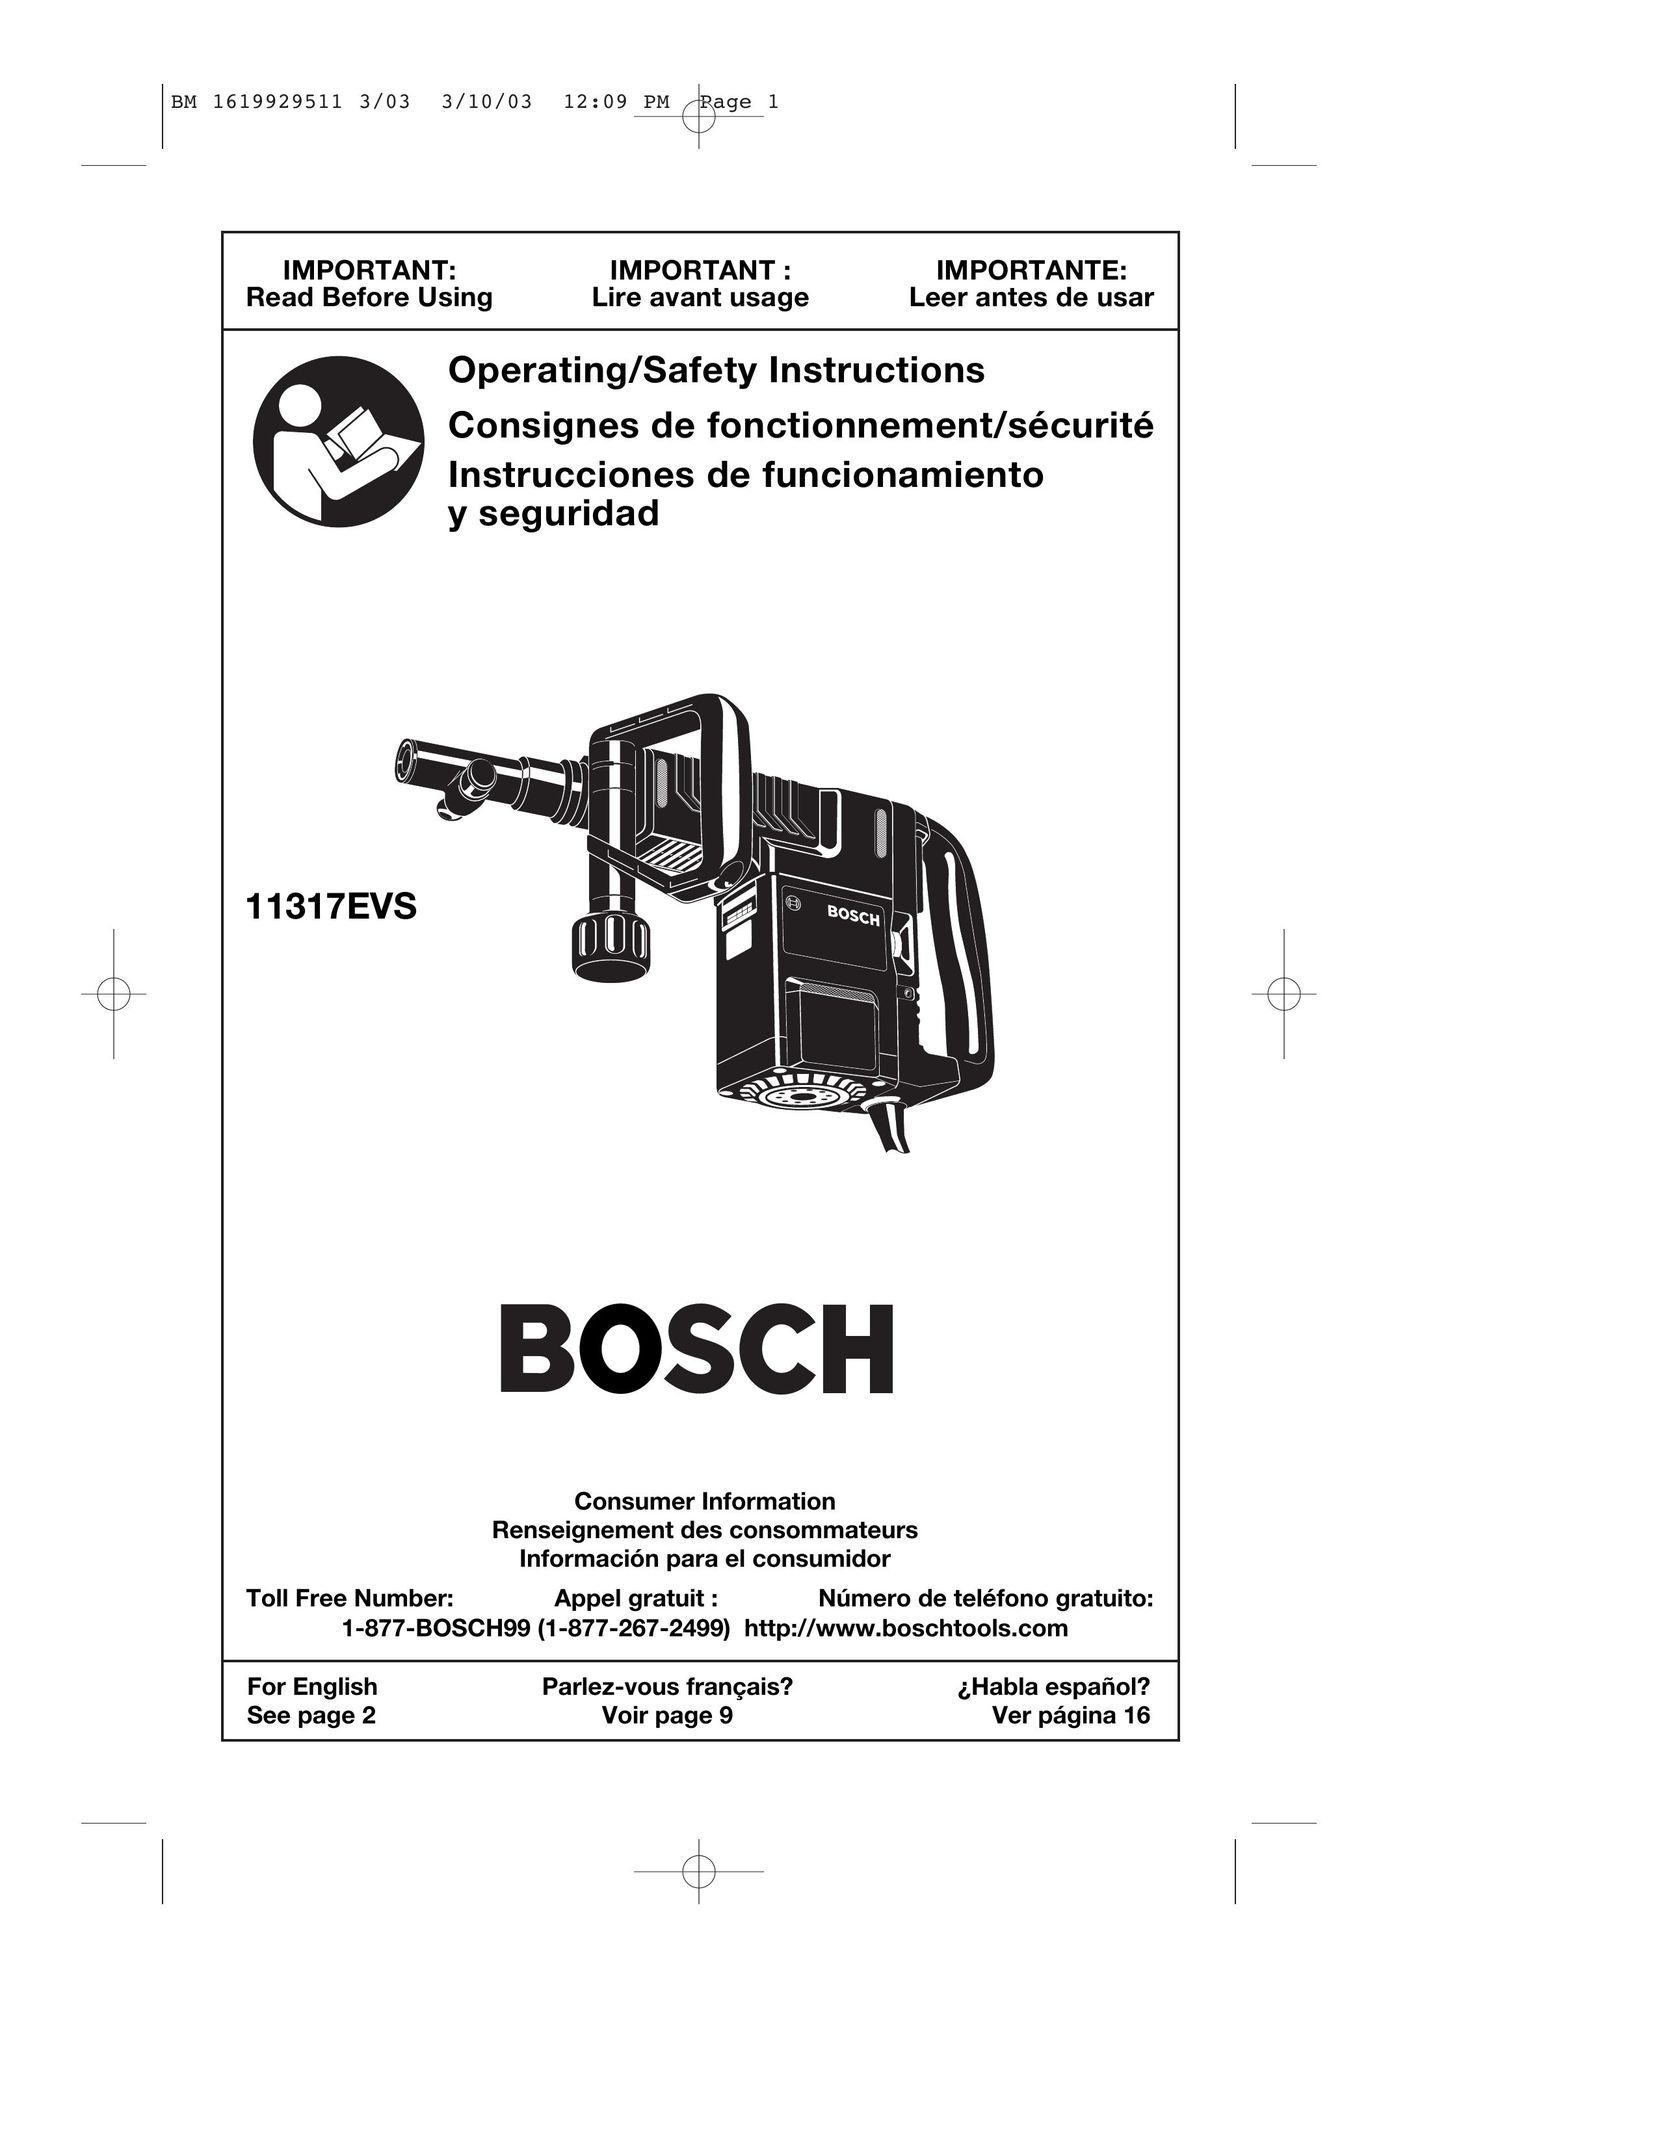 Bosch Power Tools 11317EVS Power Hammer User Manual